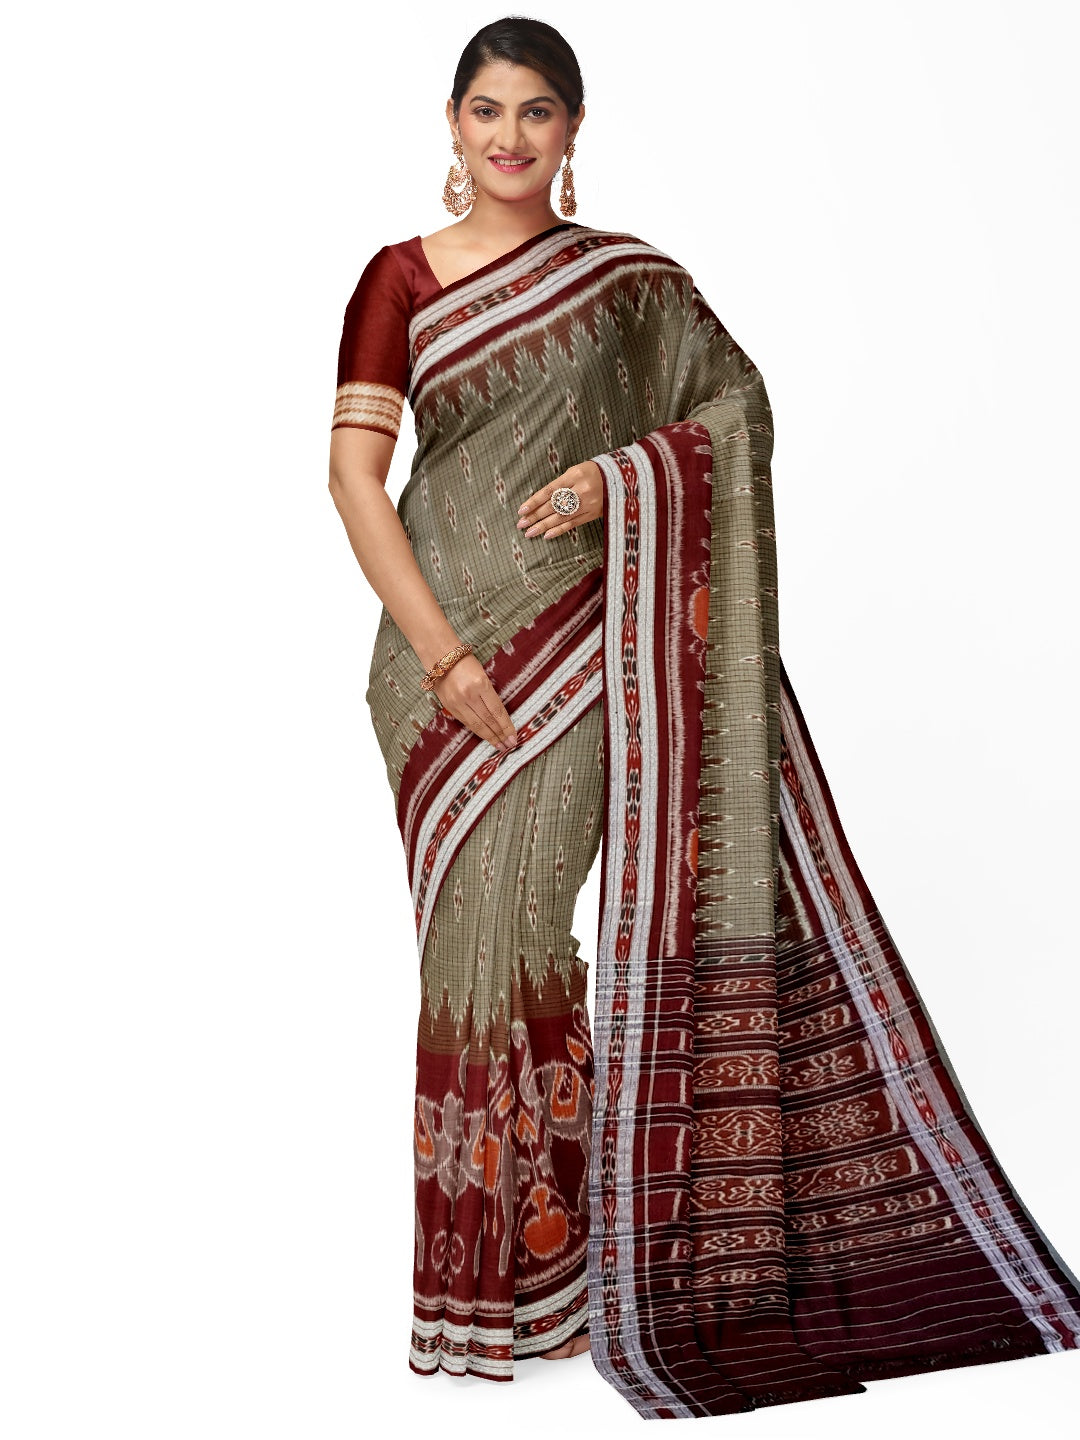 Grey wide border Cotton Odisha Ikat saree with mix match cotton ikat blouse piece